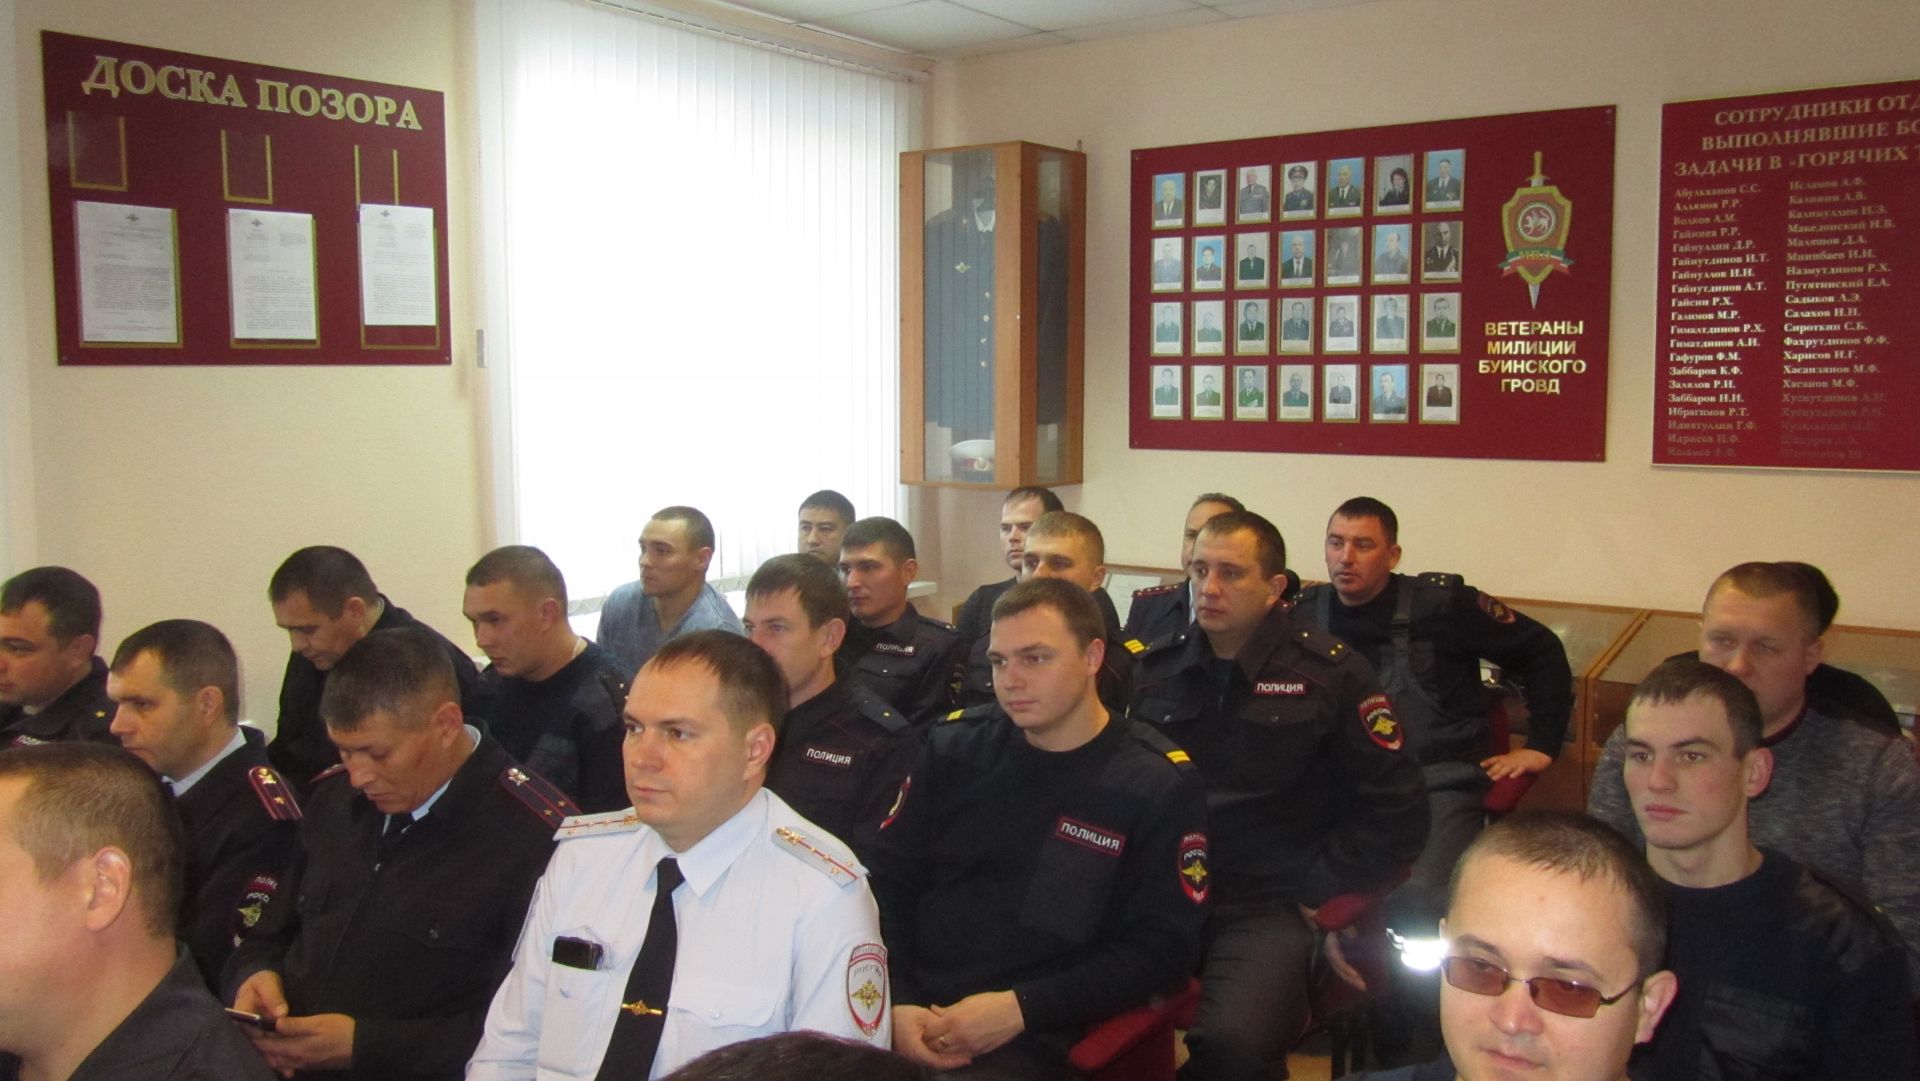 Марат Зяббаров встретился с полицейскими (+ фото)